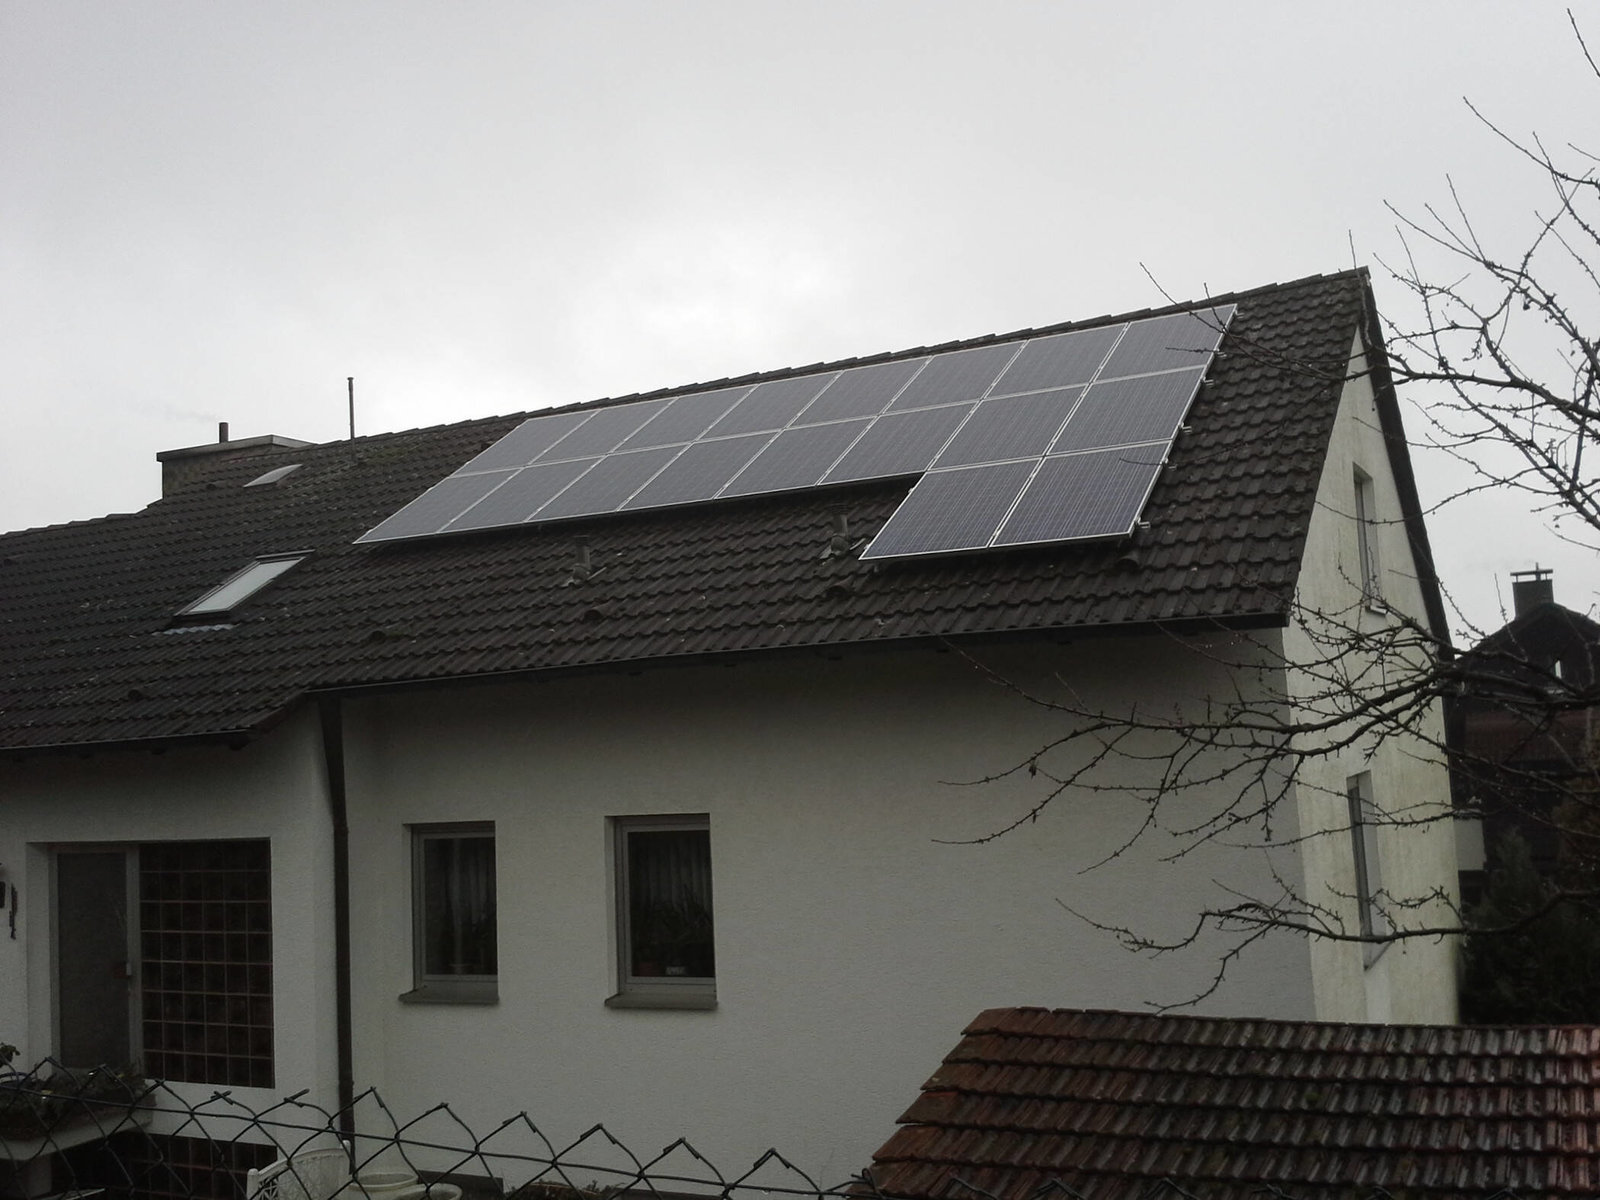 Solaranlage auf Mehrfamilienhaus